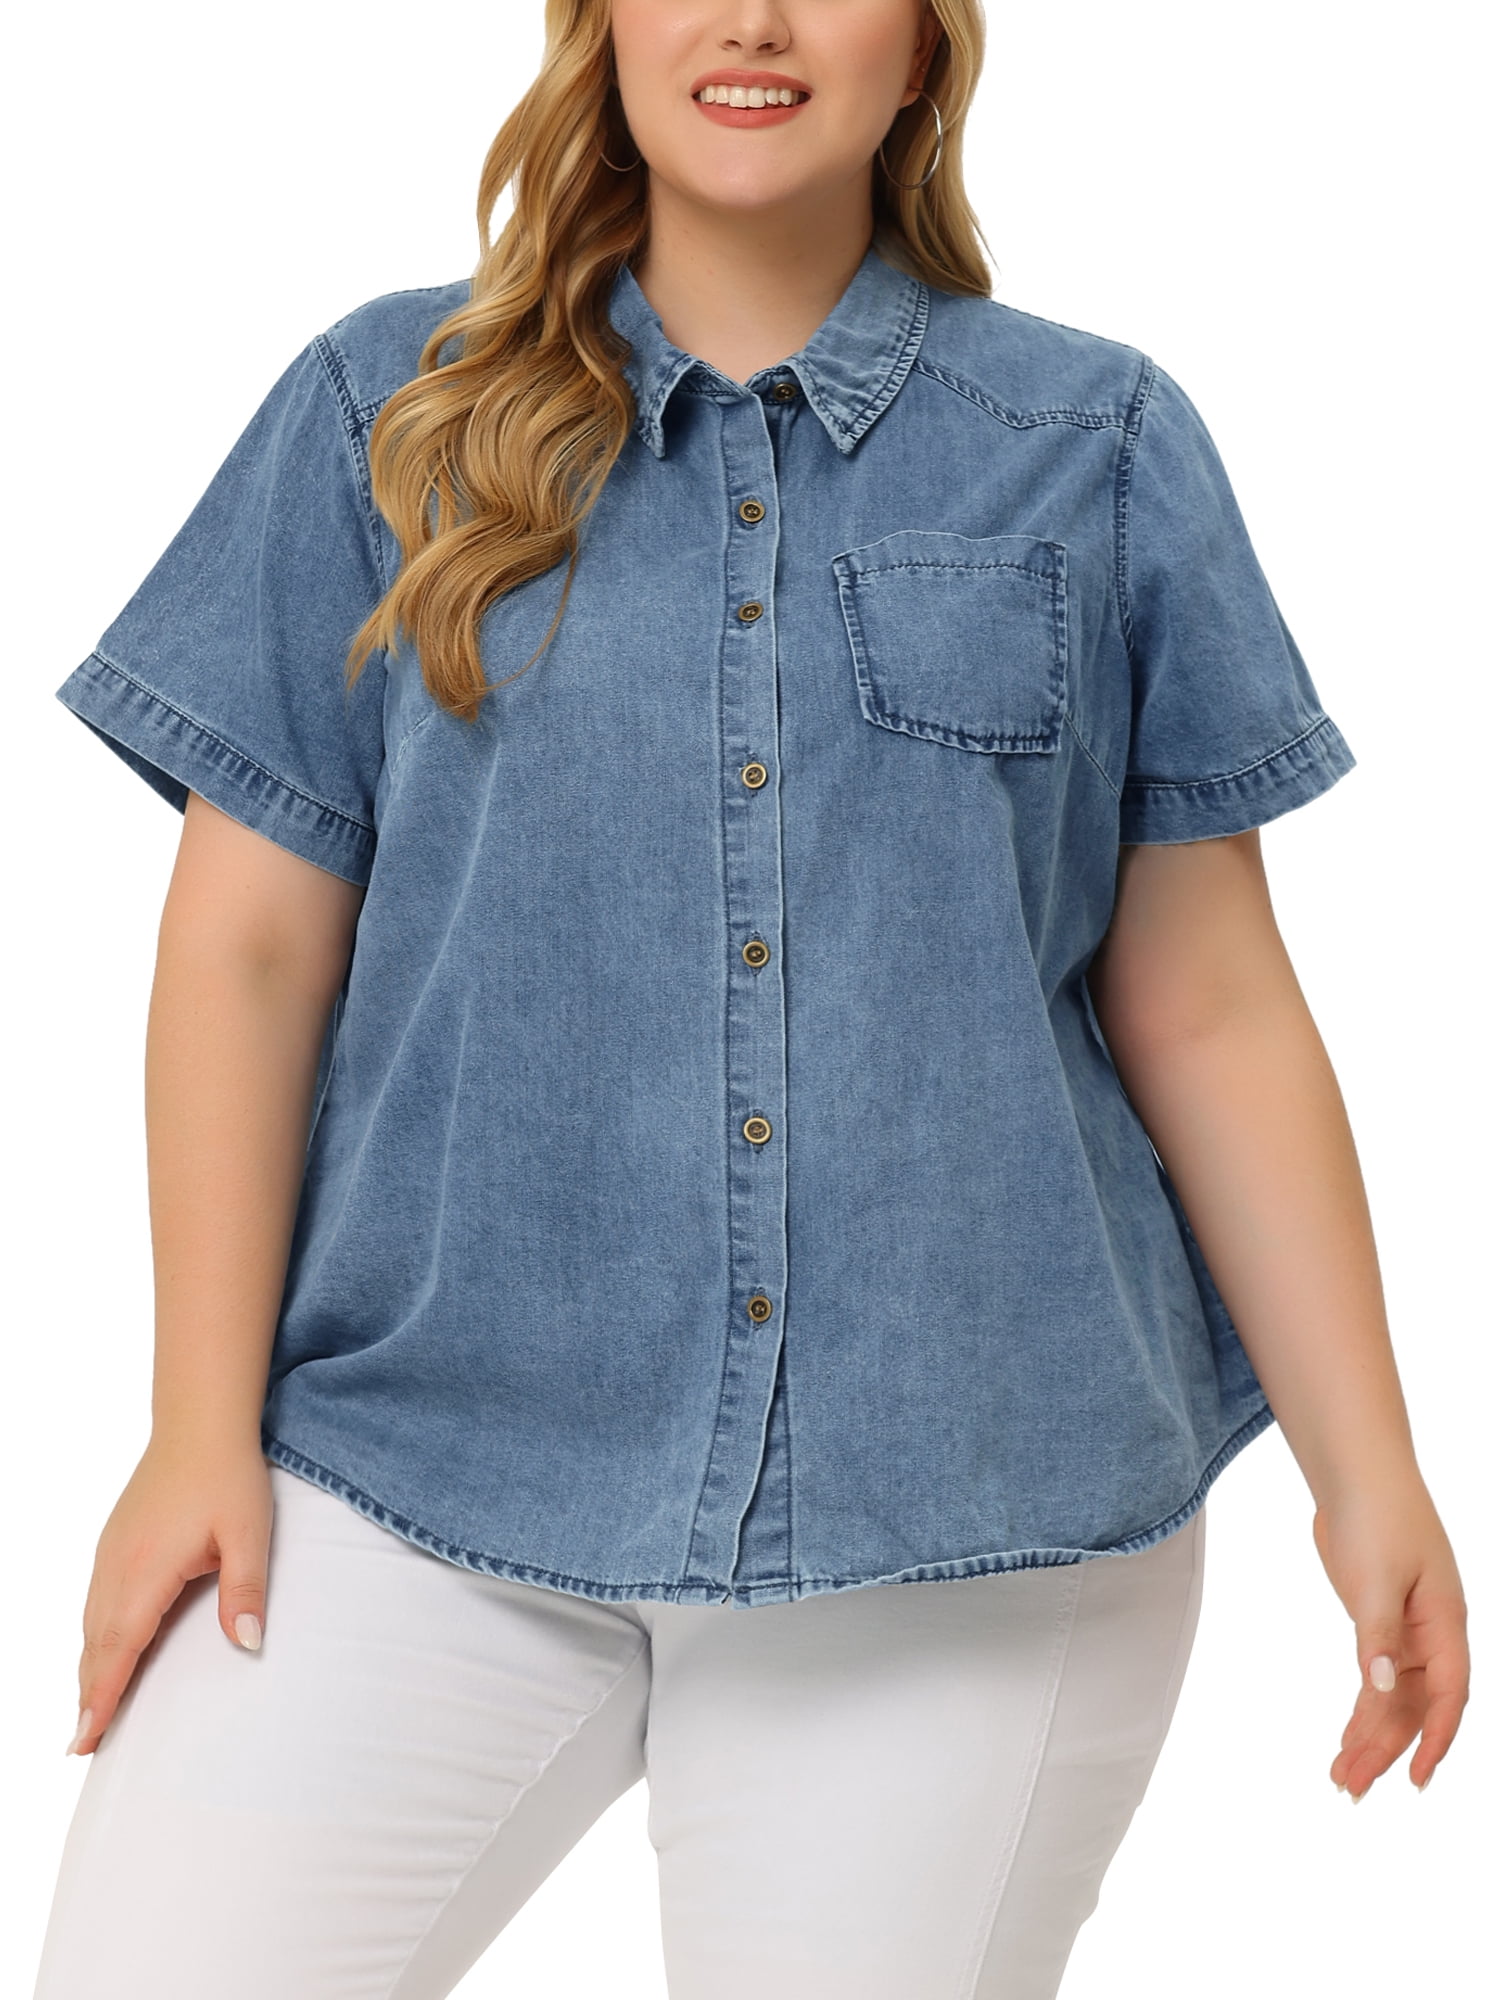 Unique Bargains Women's Plus Size Denim Jean Shirts Short Sleeve Button  Down Tops 